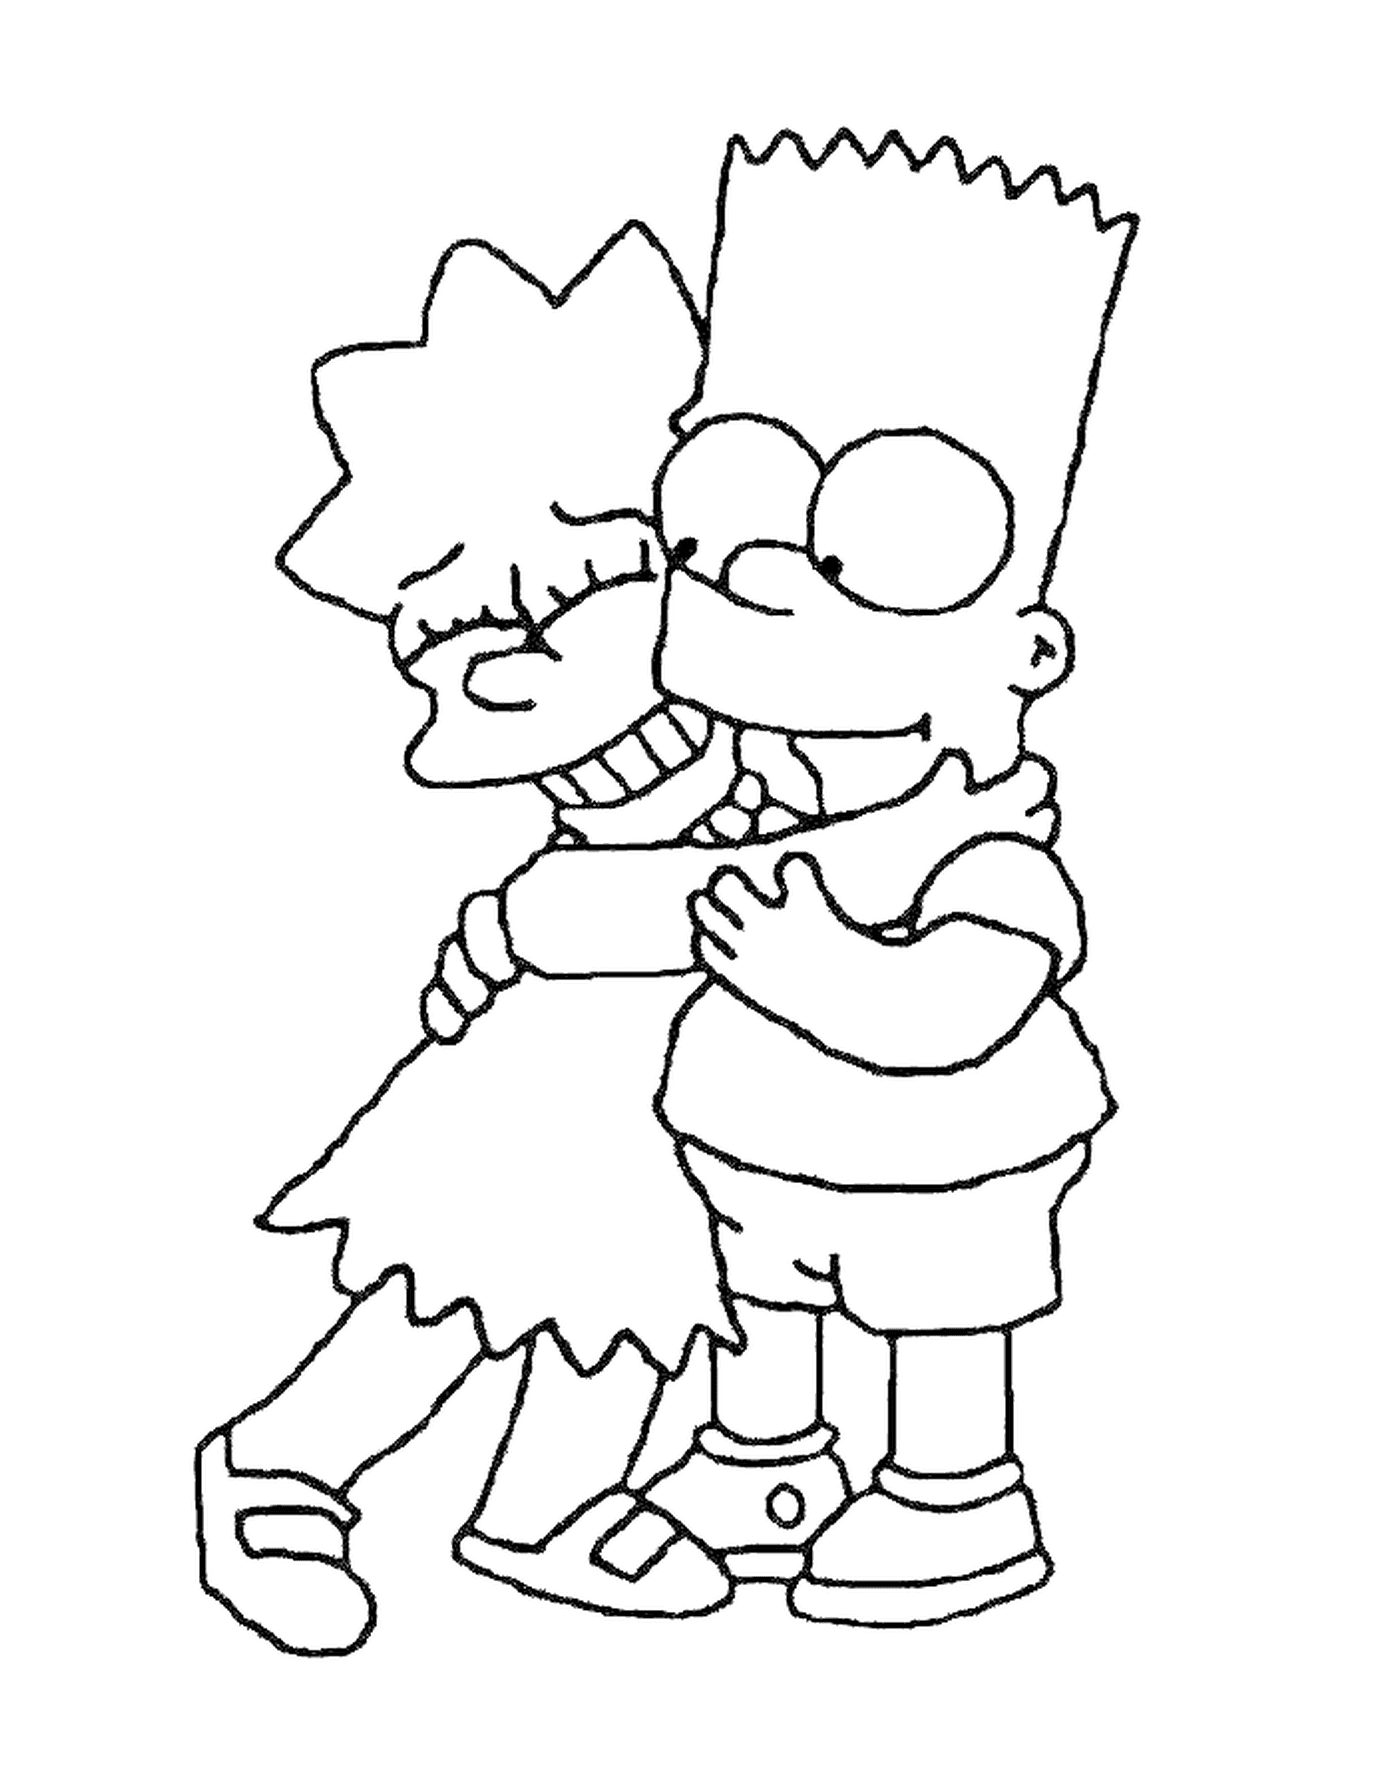  Bart y Lisa abrazan, chico sosteniendo a una chica en sus brazos 